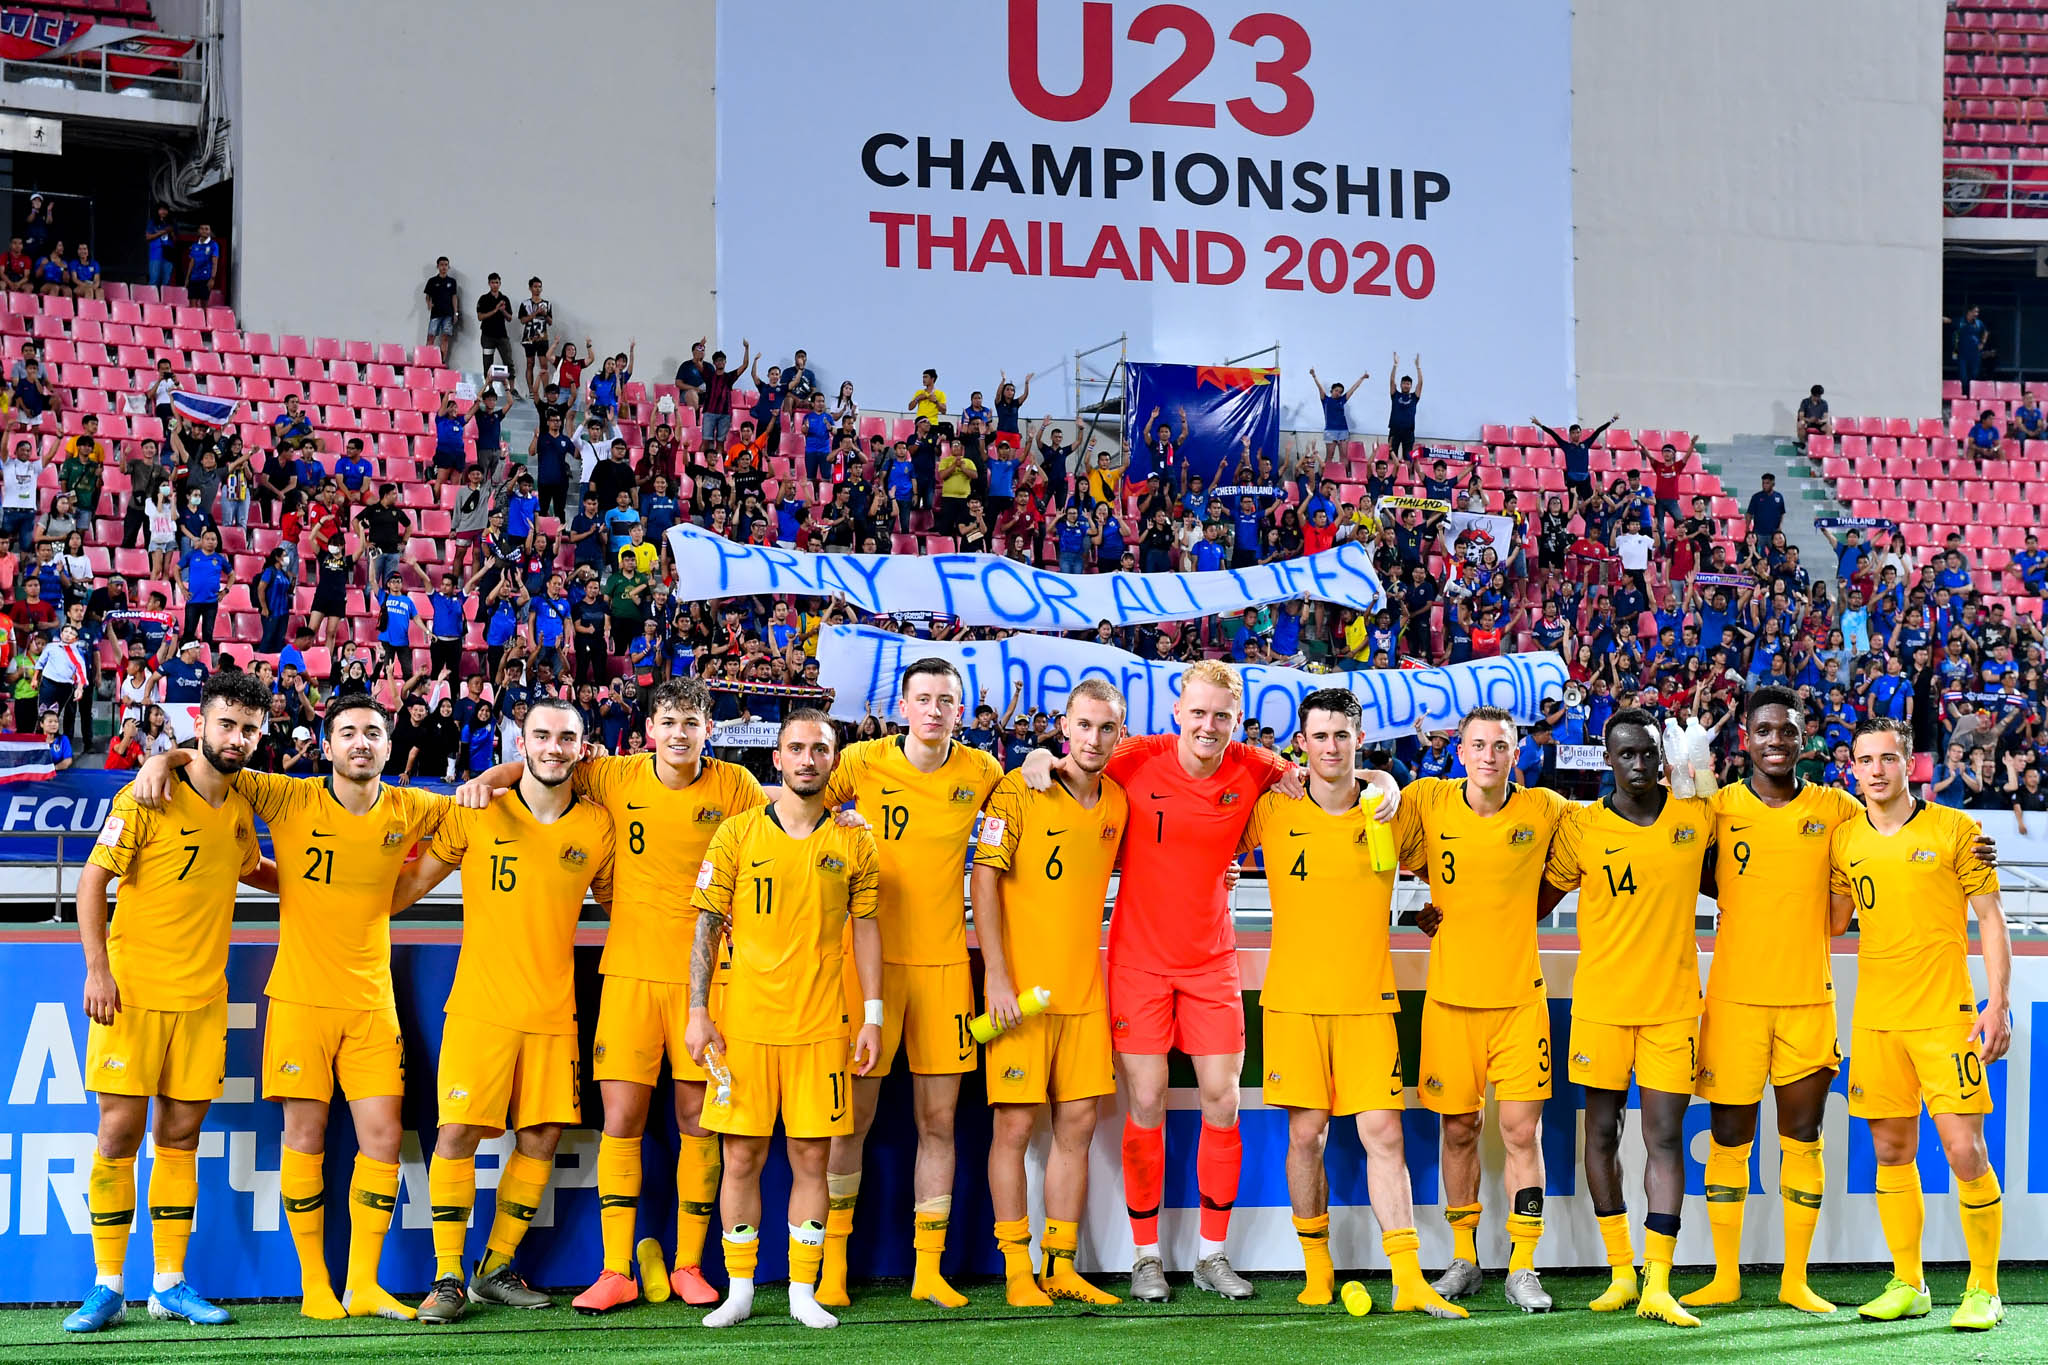 CĐV Thái Lan để lại ấn tượng đẹp trong ngày đội nhà thua ngược Australia - Bóng Đá